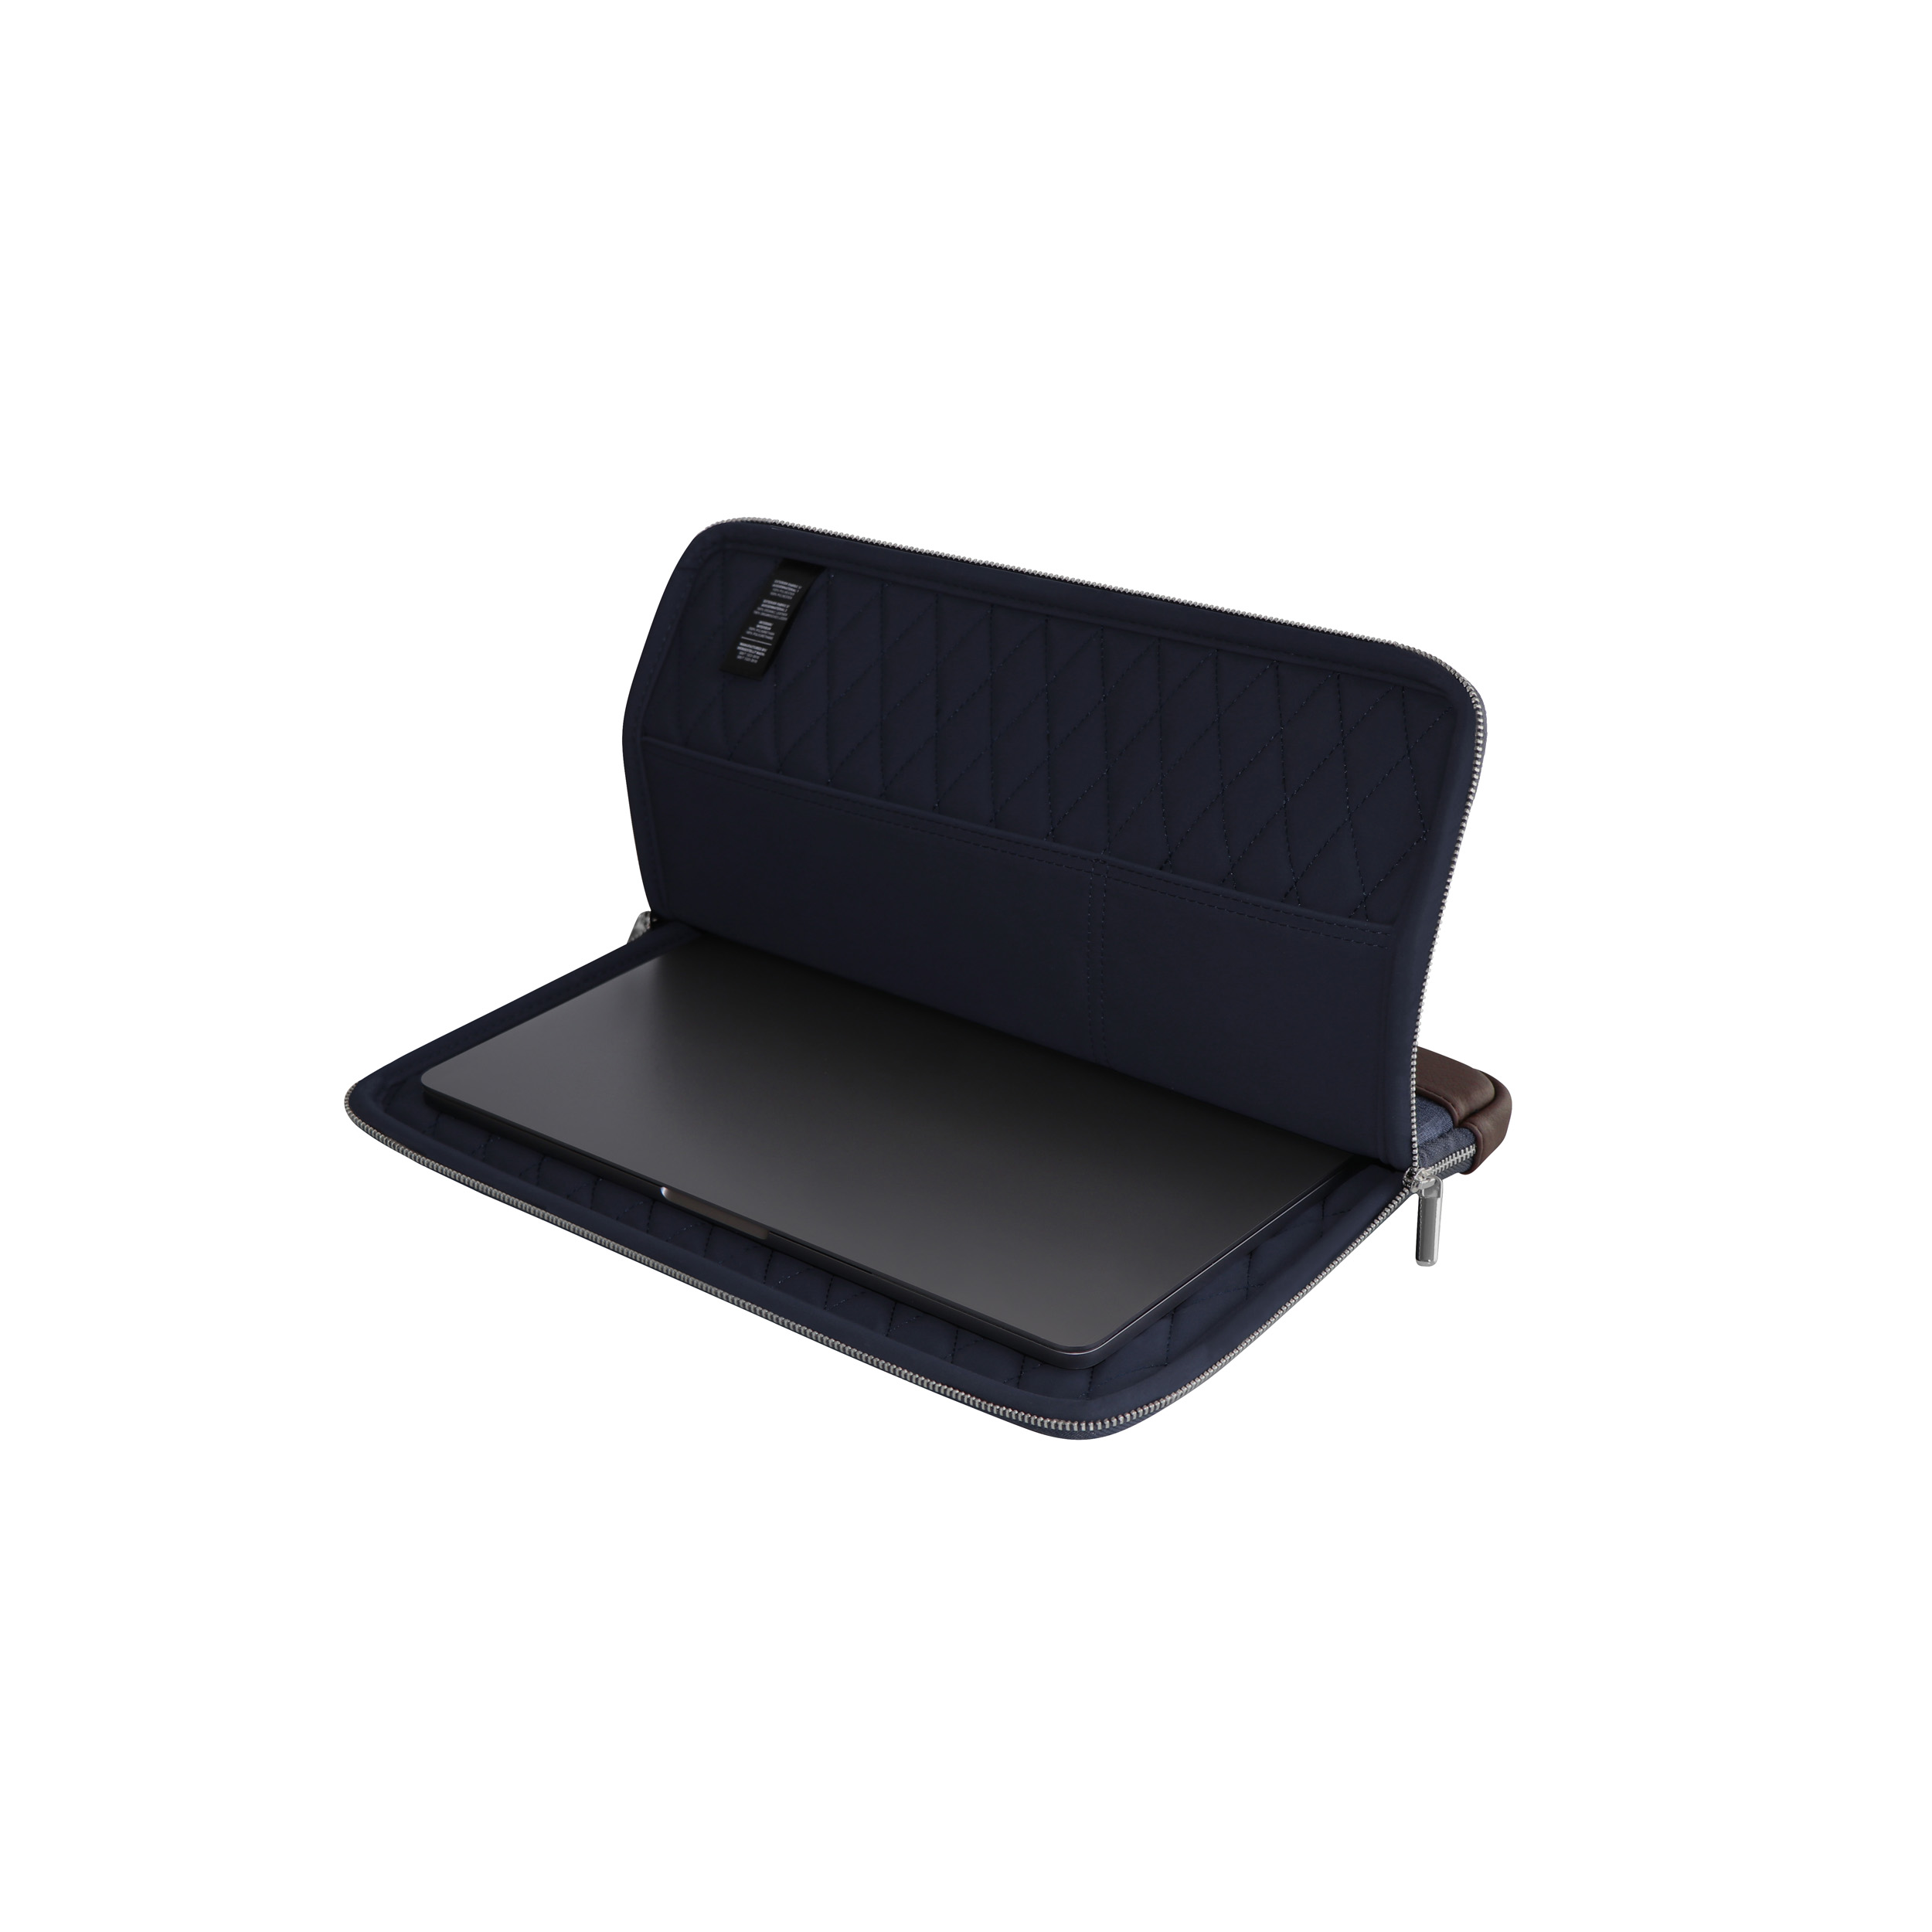 KMP Sleeve für Sleeve MacBook für Blue/Brown Textil, Pro Notebook biobasiertes Apple Material / Sleeve brown Lederoptik, blue in 13